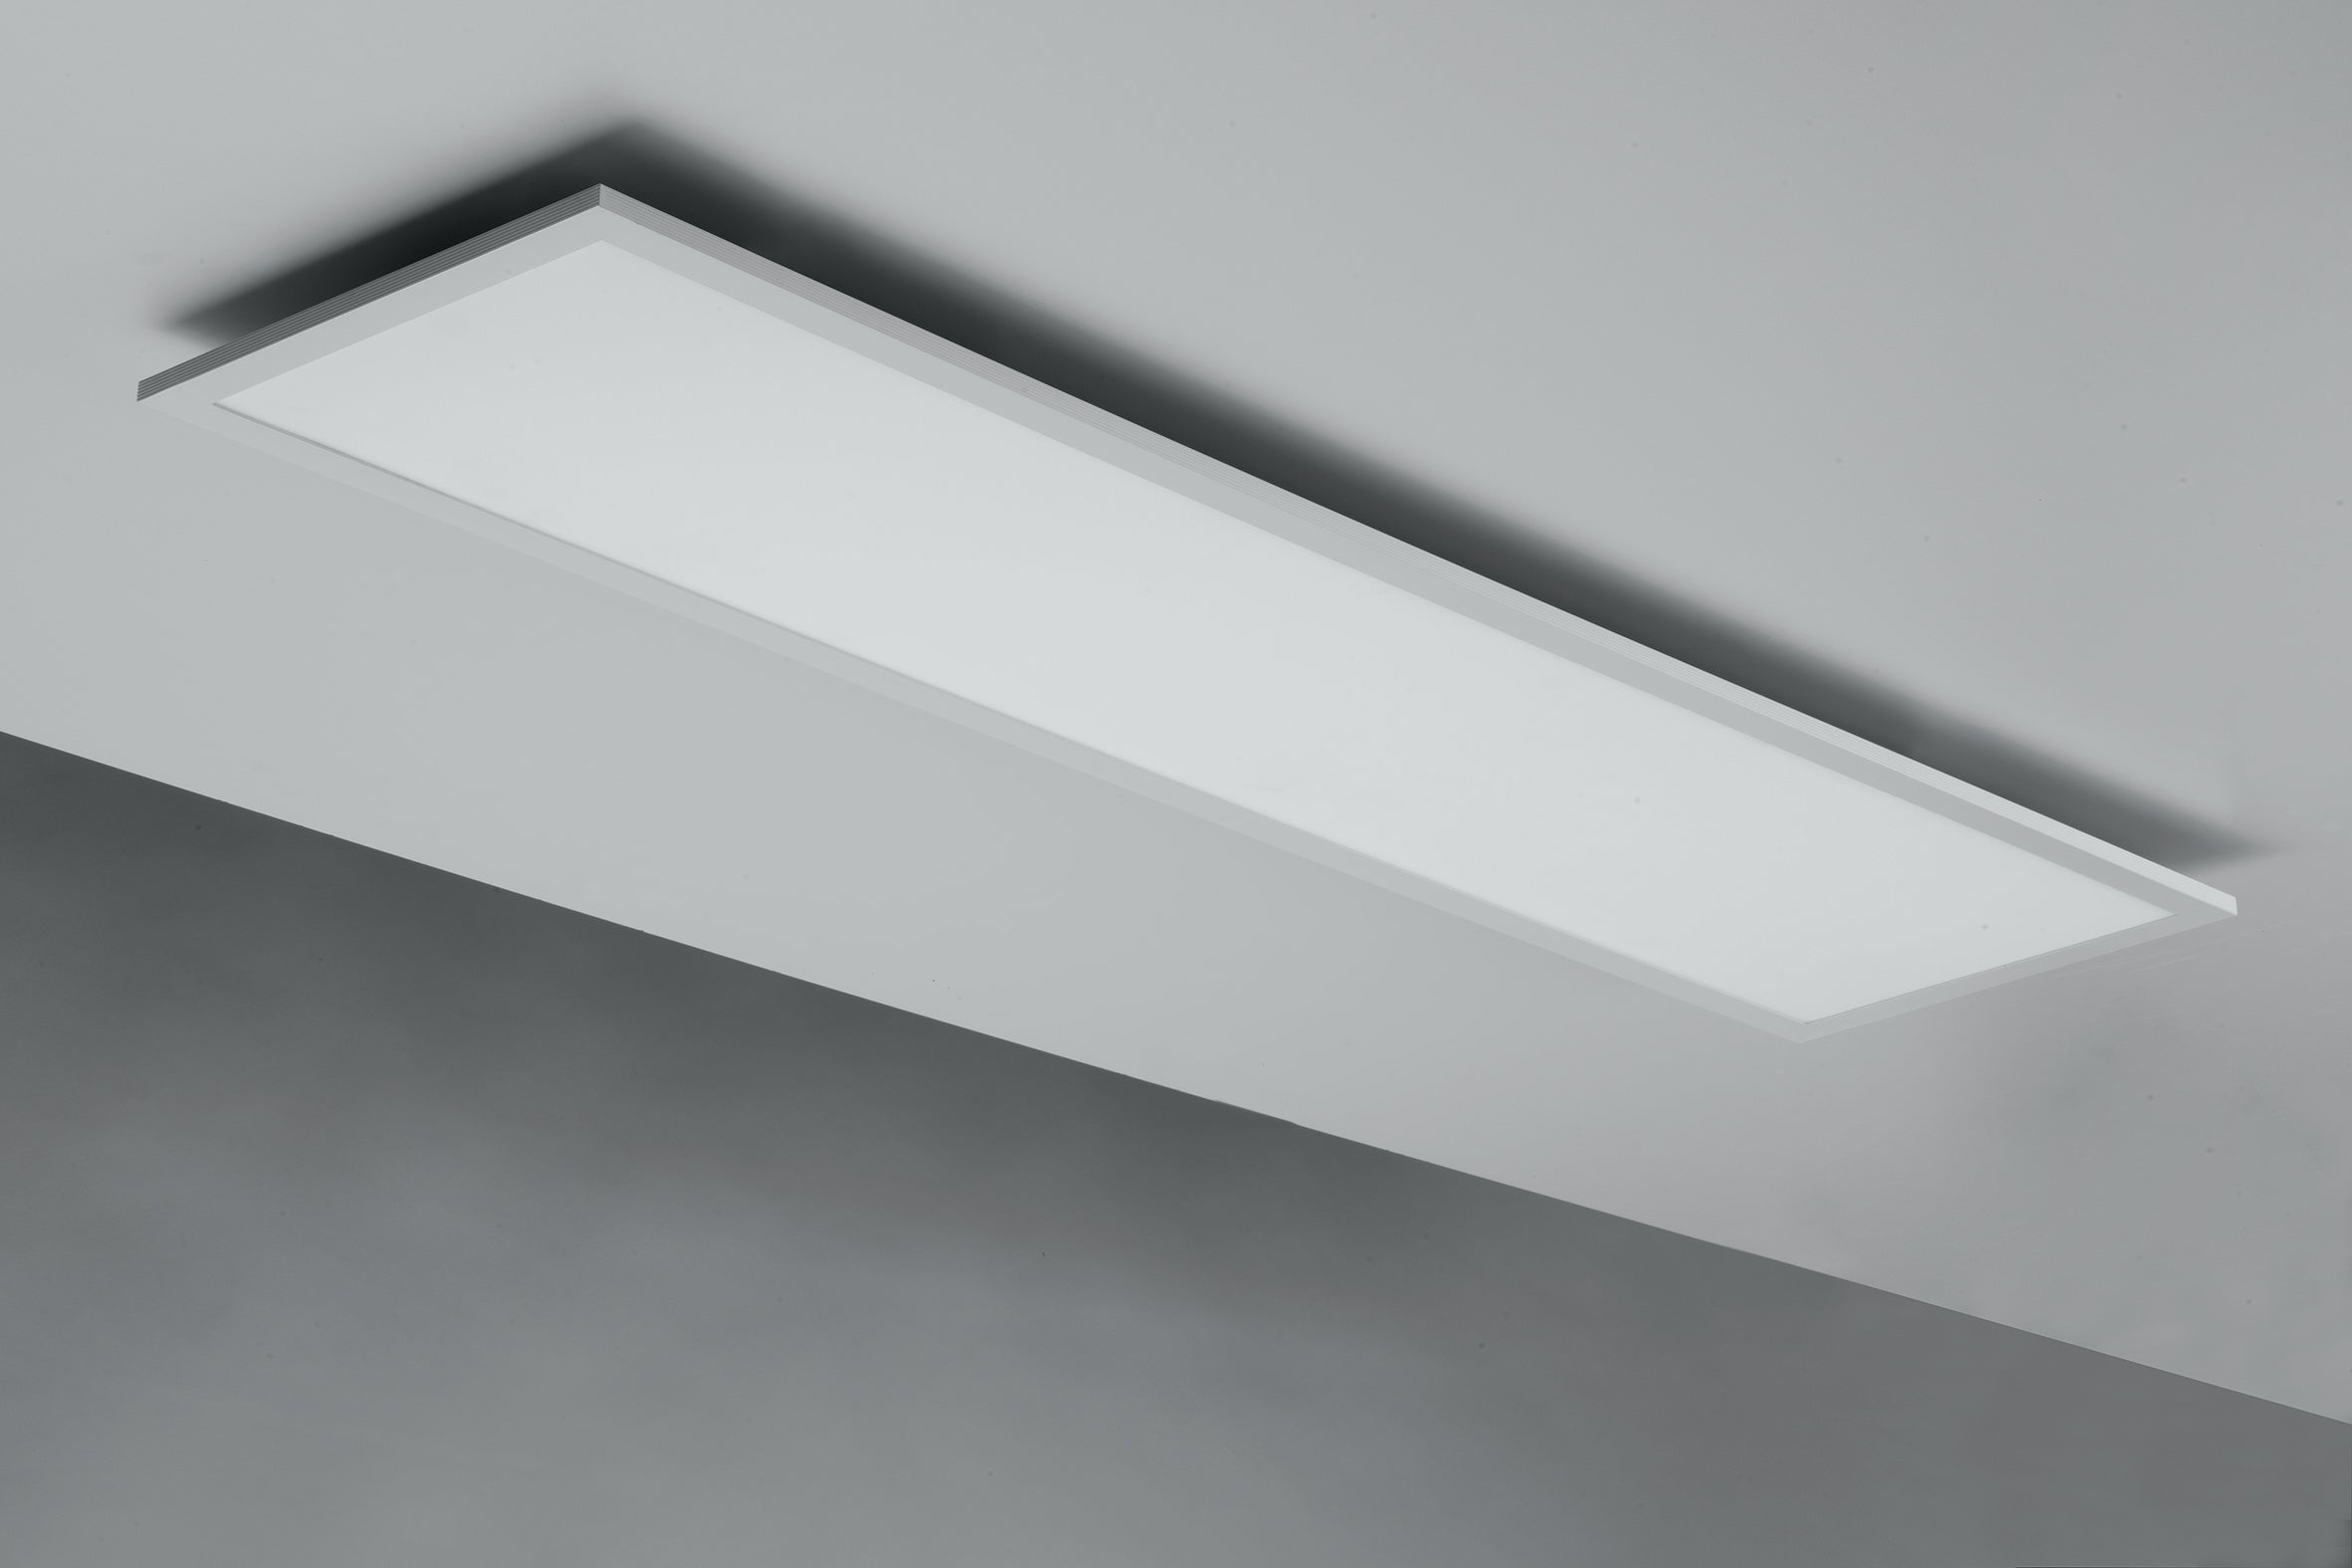 Panel LED de 40W en aluminio blanco con función CCT y dimmer con mando a distancia incluido